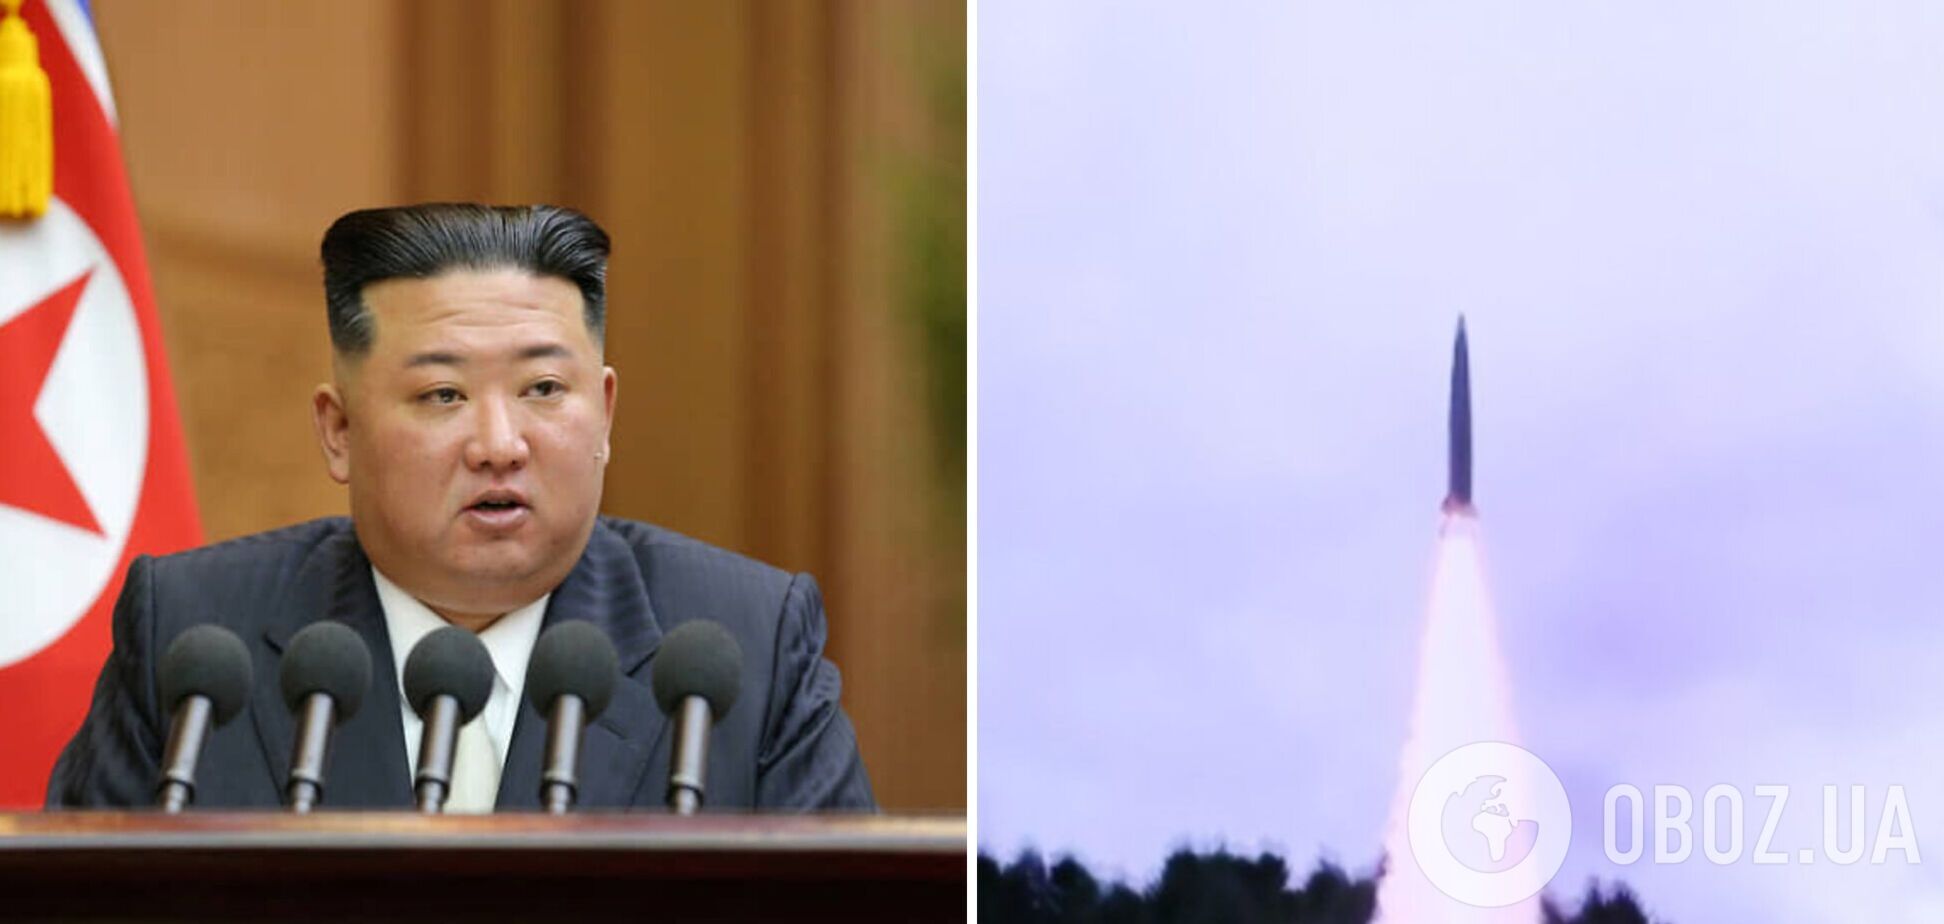 КНДР произвела новый запуск баллистической ракеты и направила истребители в сторону Южной Кореи